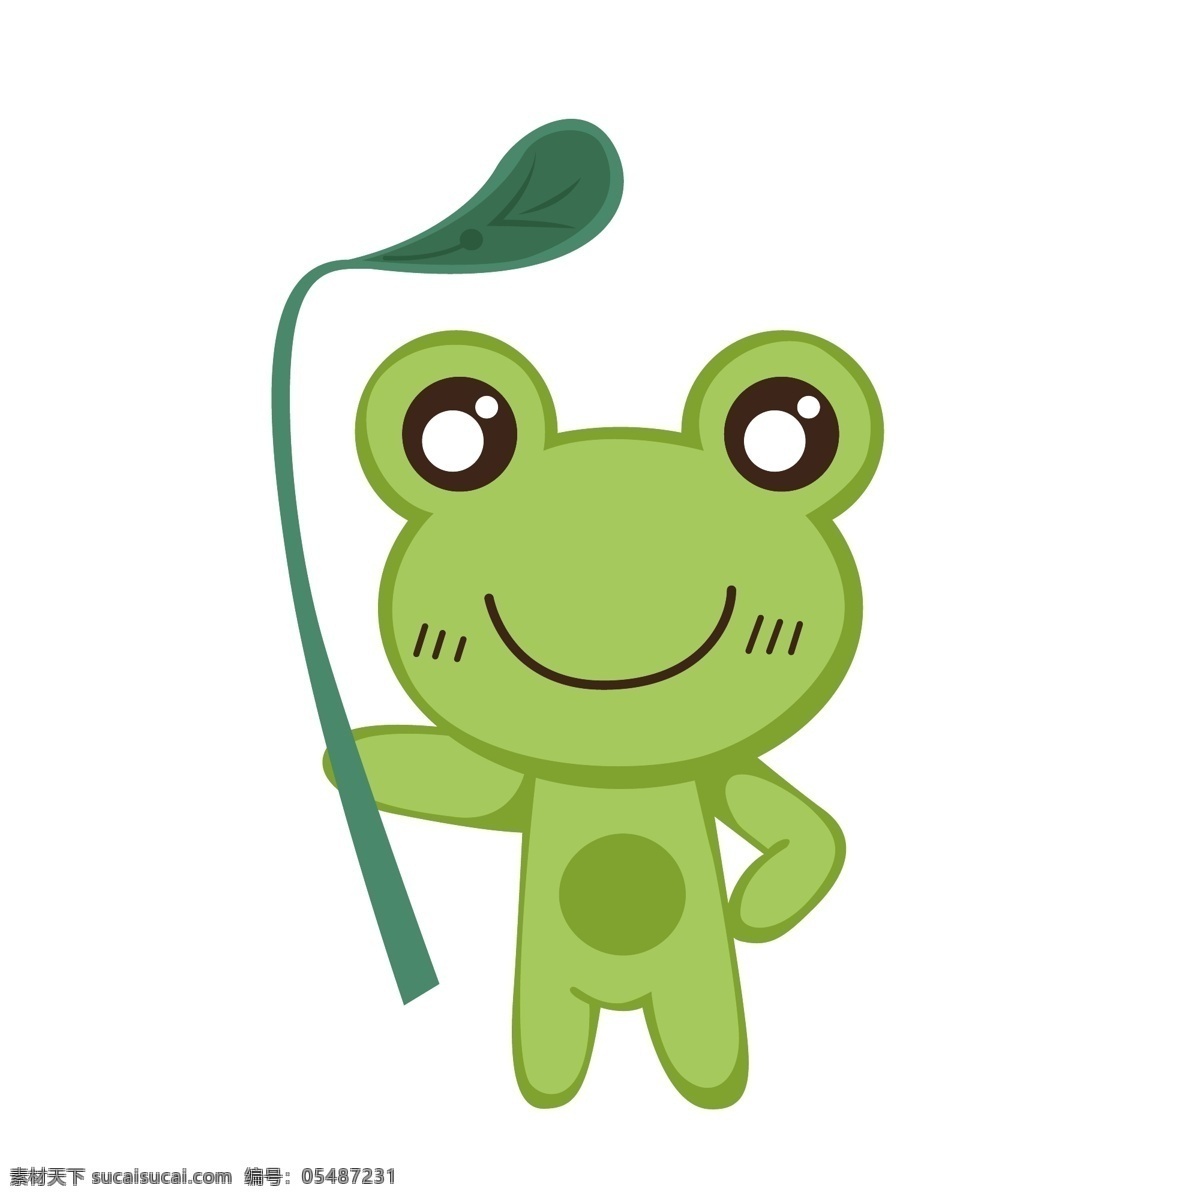 绿色 青蛙 矢量 卡通 卡通动物 可爱 可爱动物 可爱青蛙 绿色的青蛙 卡通青蛙 可爱的